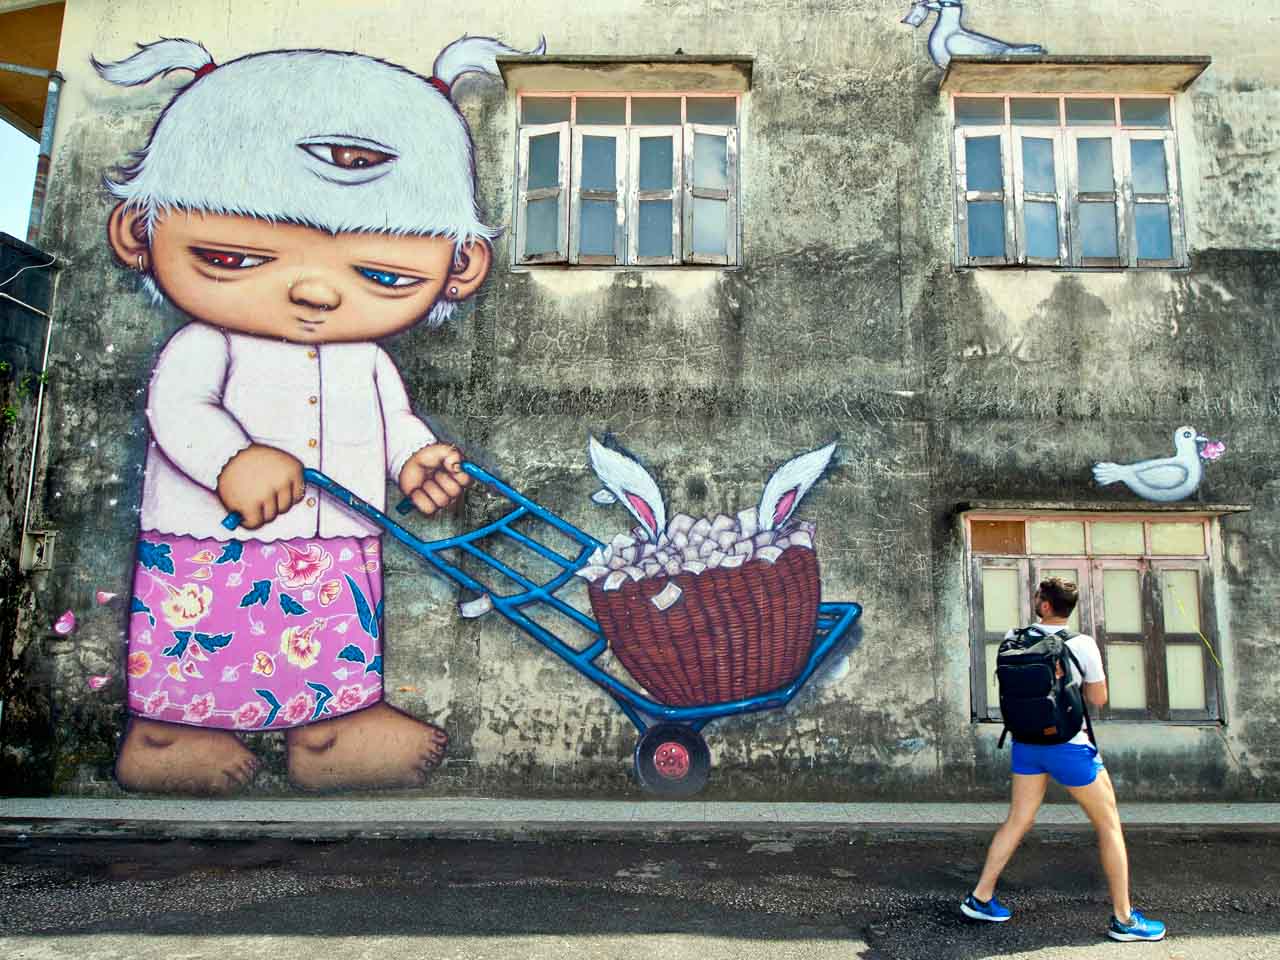 street-art-in-thailand.jpg